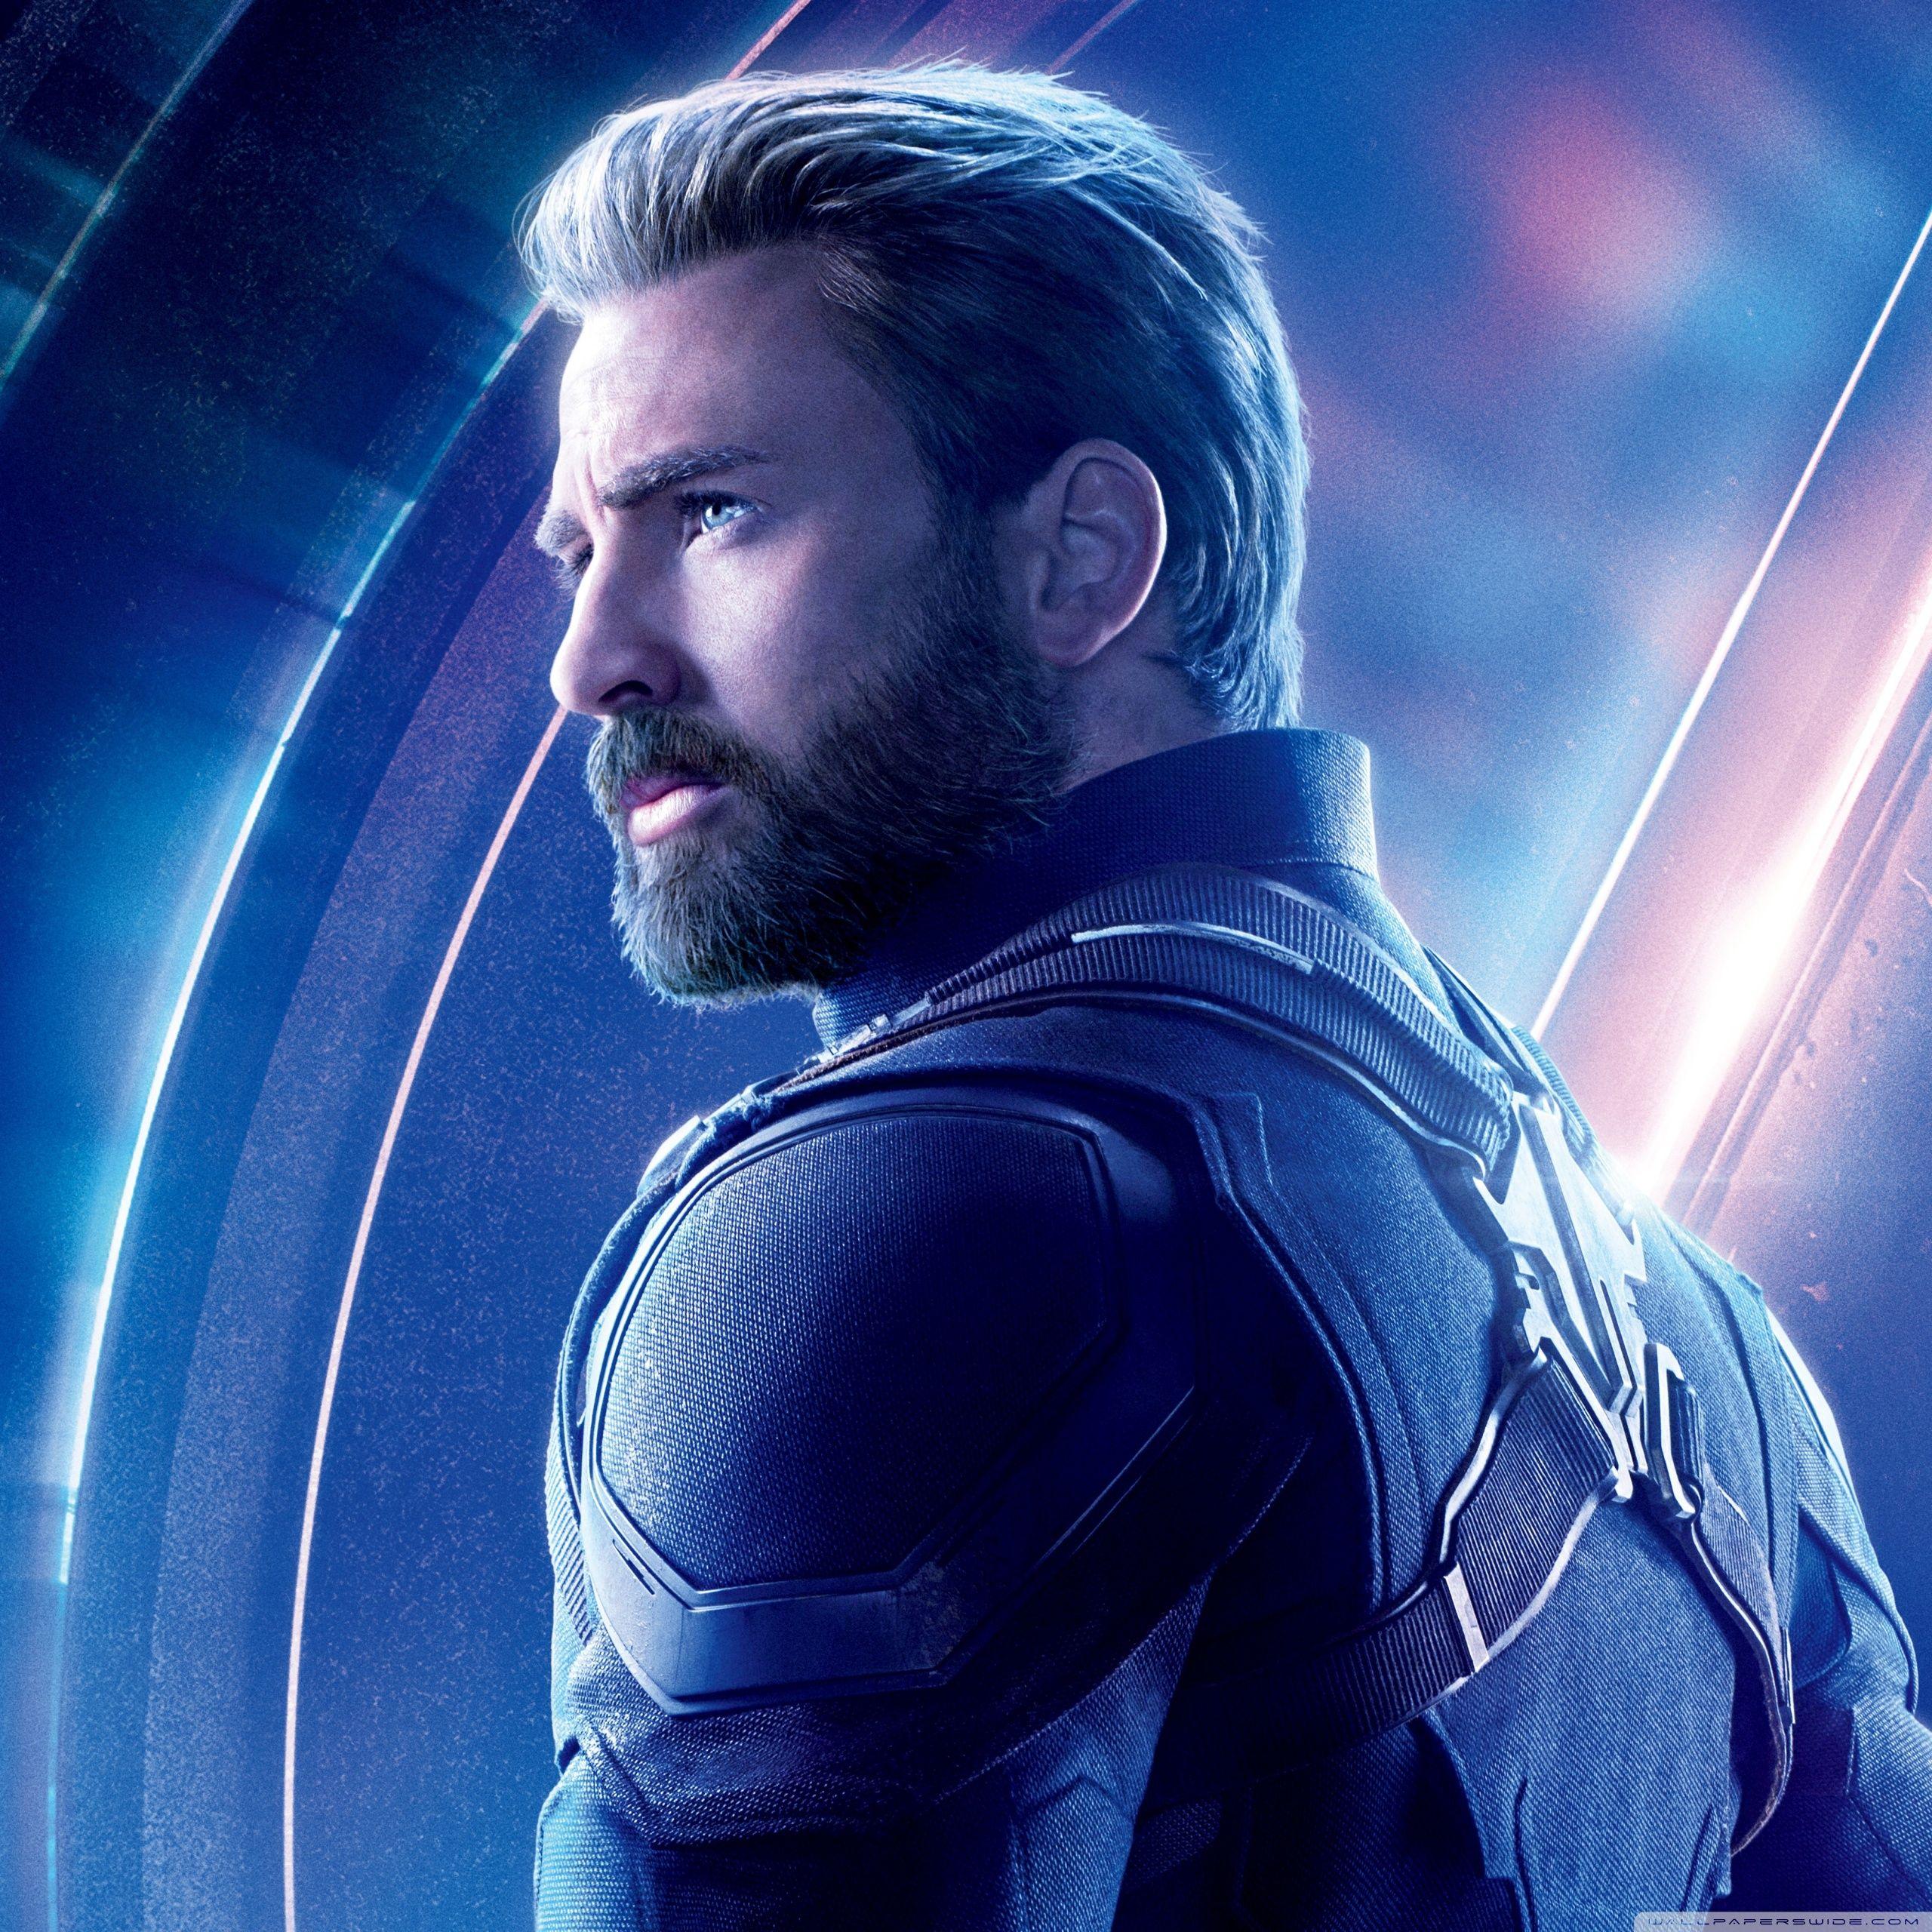 Captain America Infinity War Wallpapers Top Free Captain America Infinity War Backgrounds Wallpaperaccess